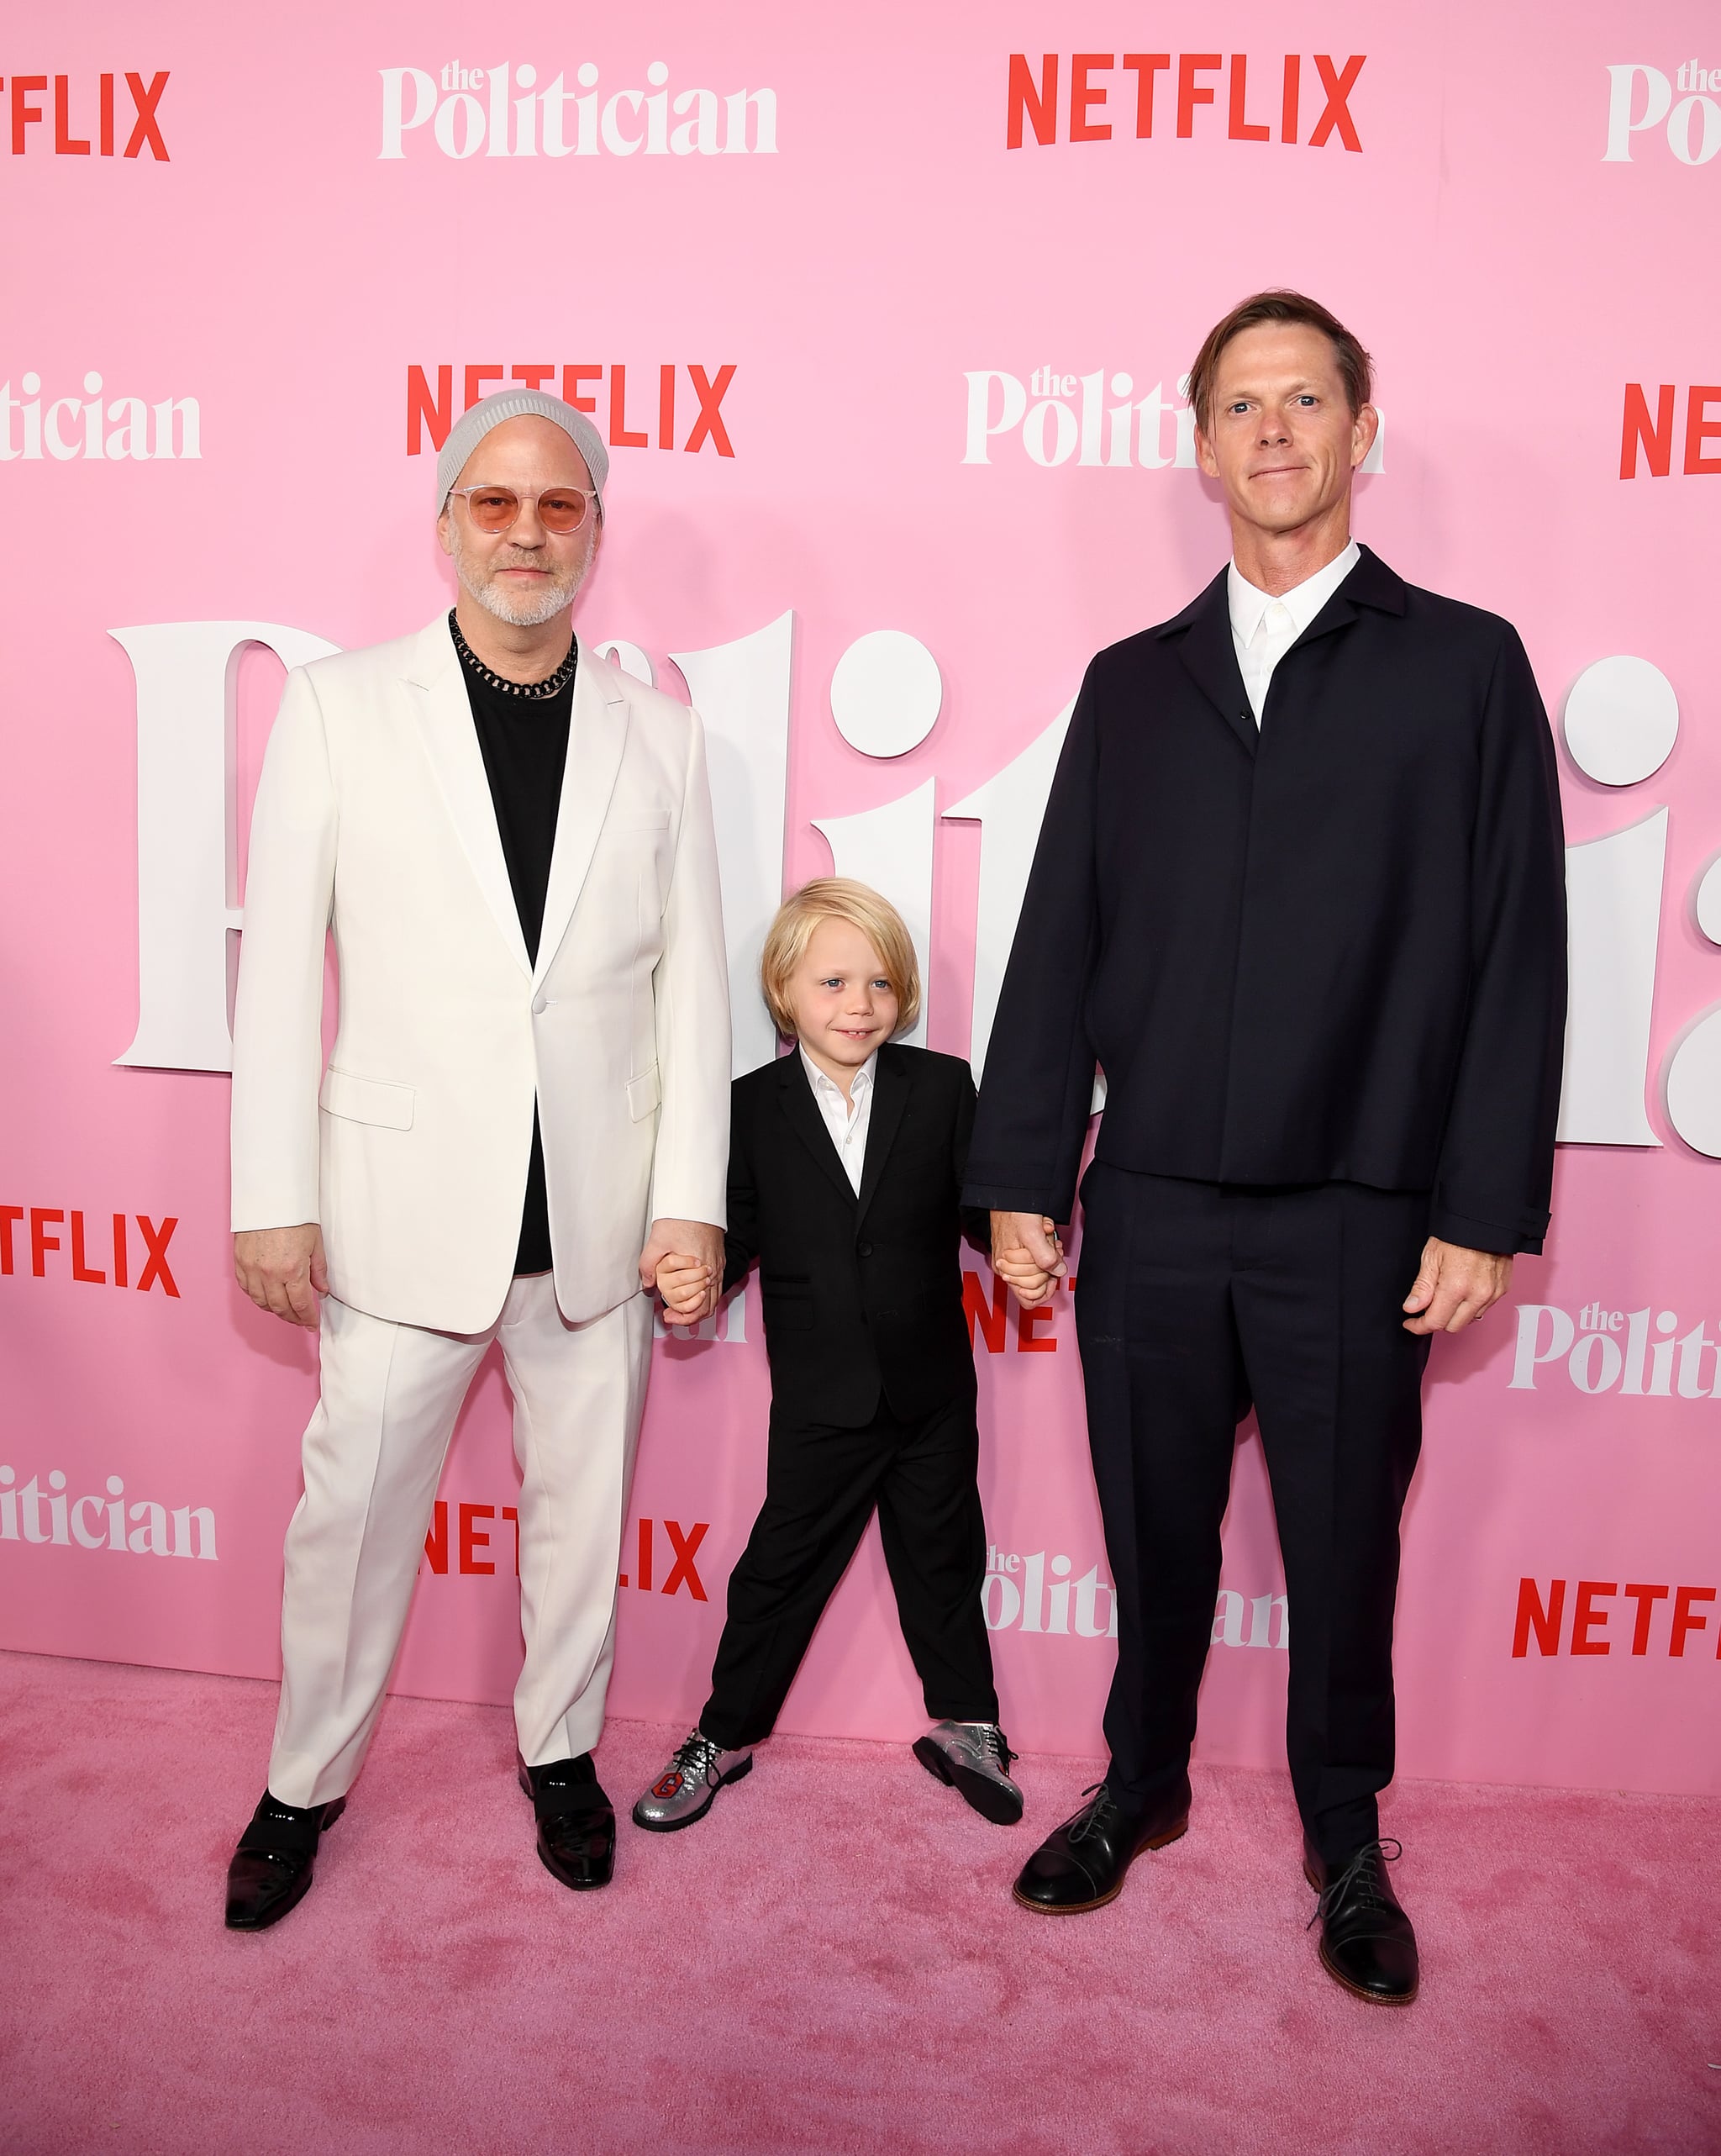 NEW YORK, NEW YORK - SEPTEMBER 26: Ryan Murphy and David Miller attend Netflix's 